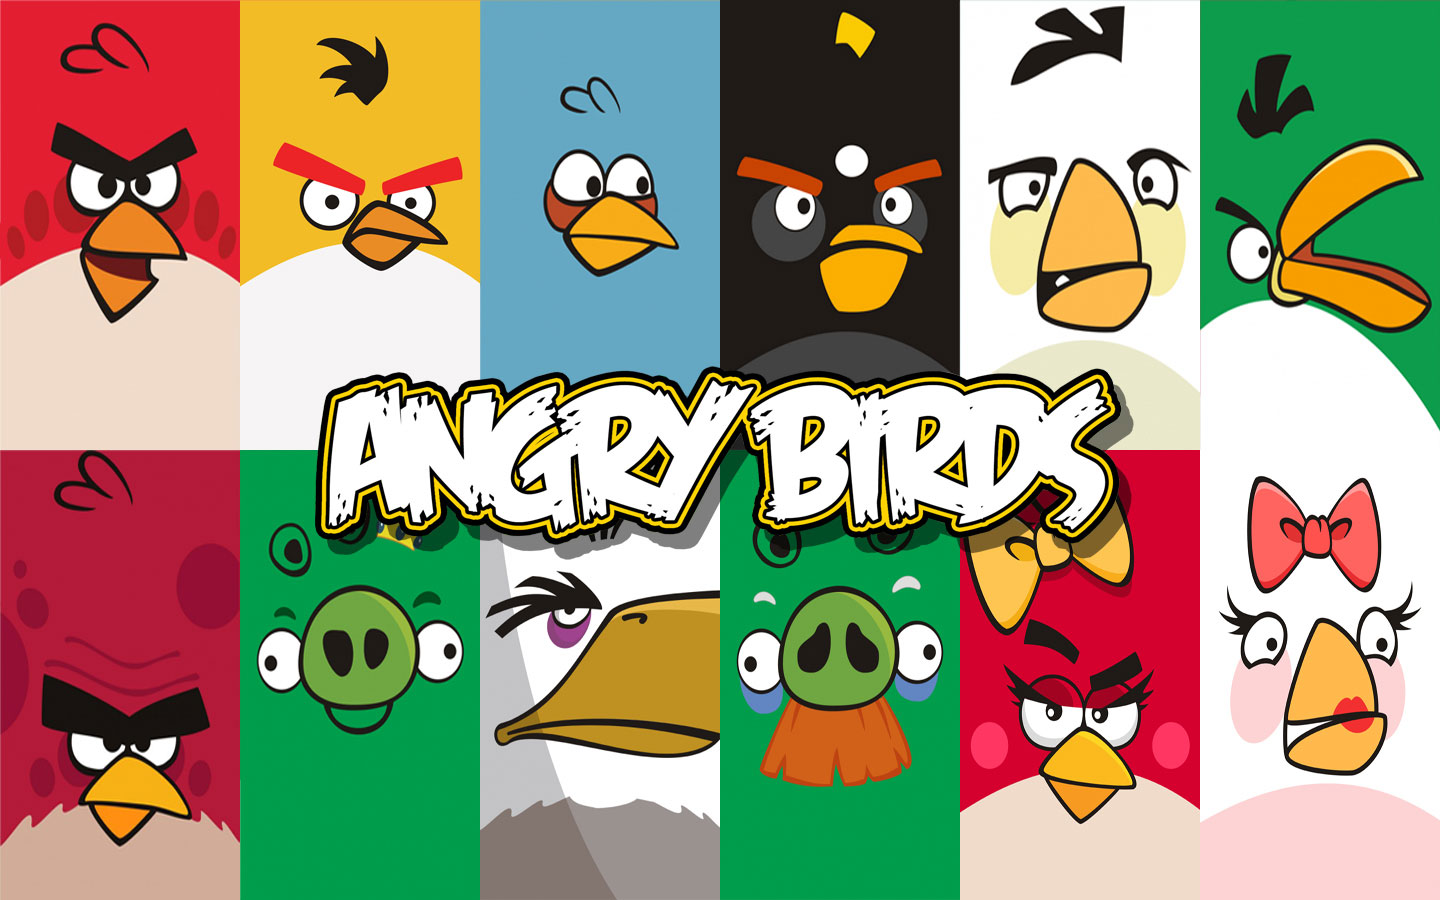 Arte: Game Angry Birds vai ganhar parque temático no Brasil